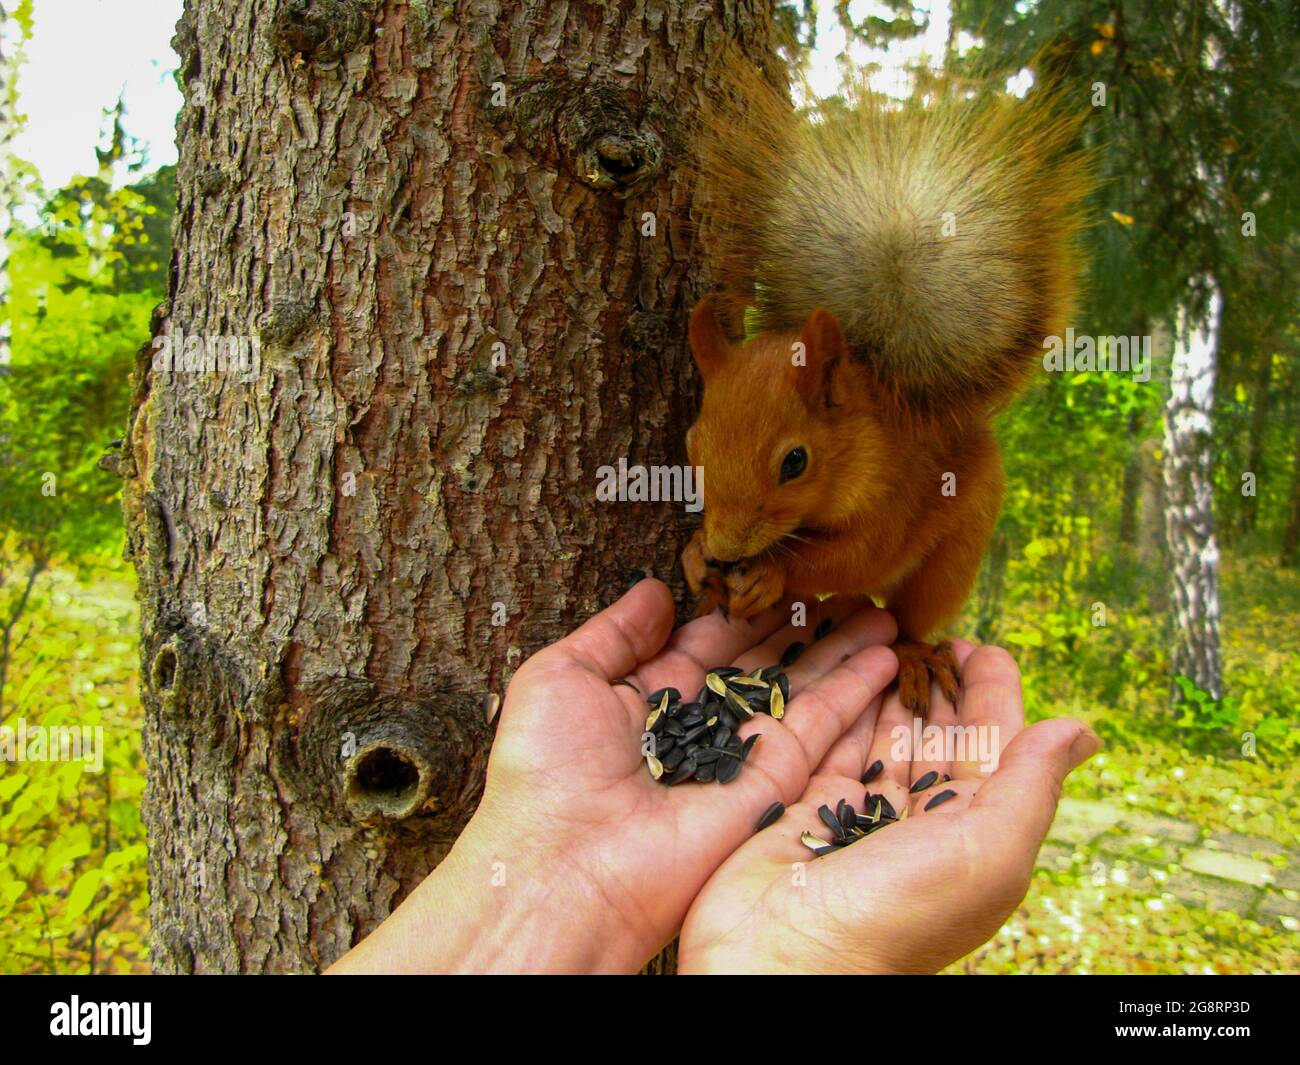 Lo scoiattolo mangia i semi di girasole dalle mani umane. Il concetto di ecologia e tutela ambientale. Foto Stock